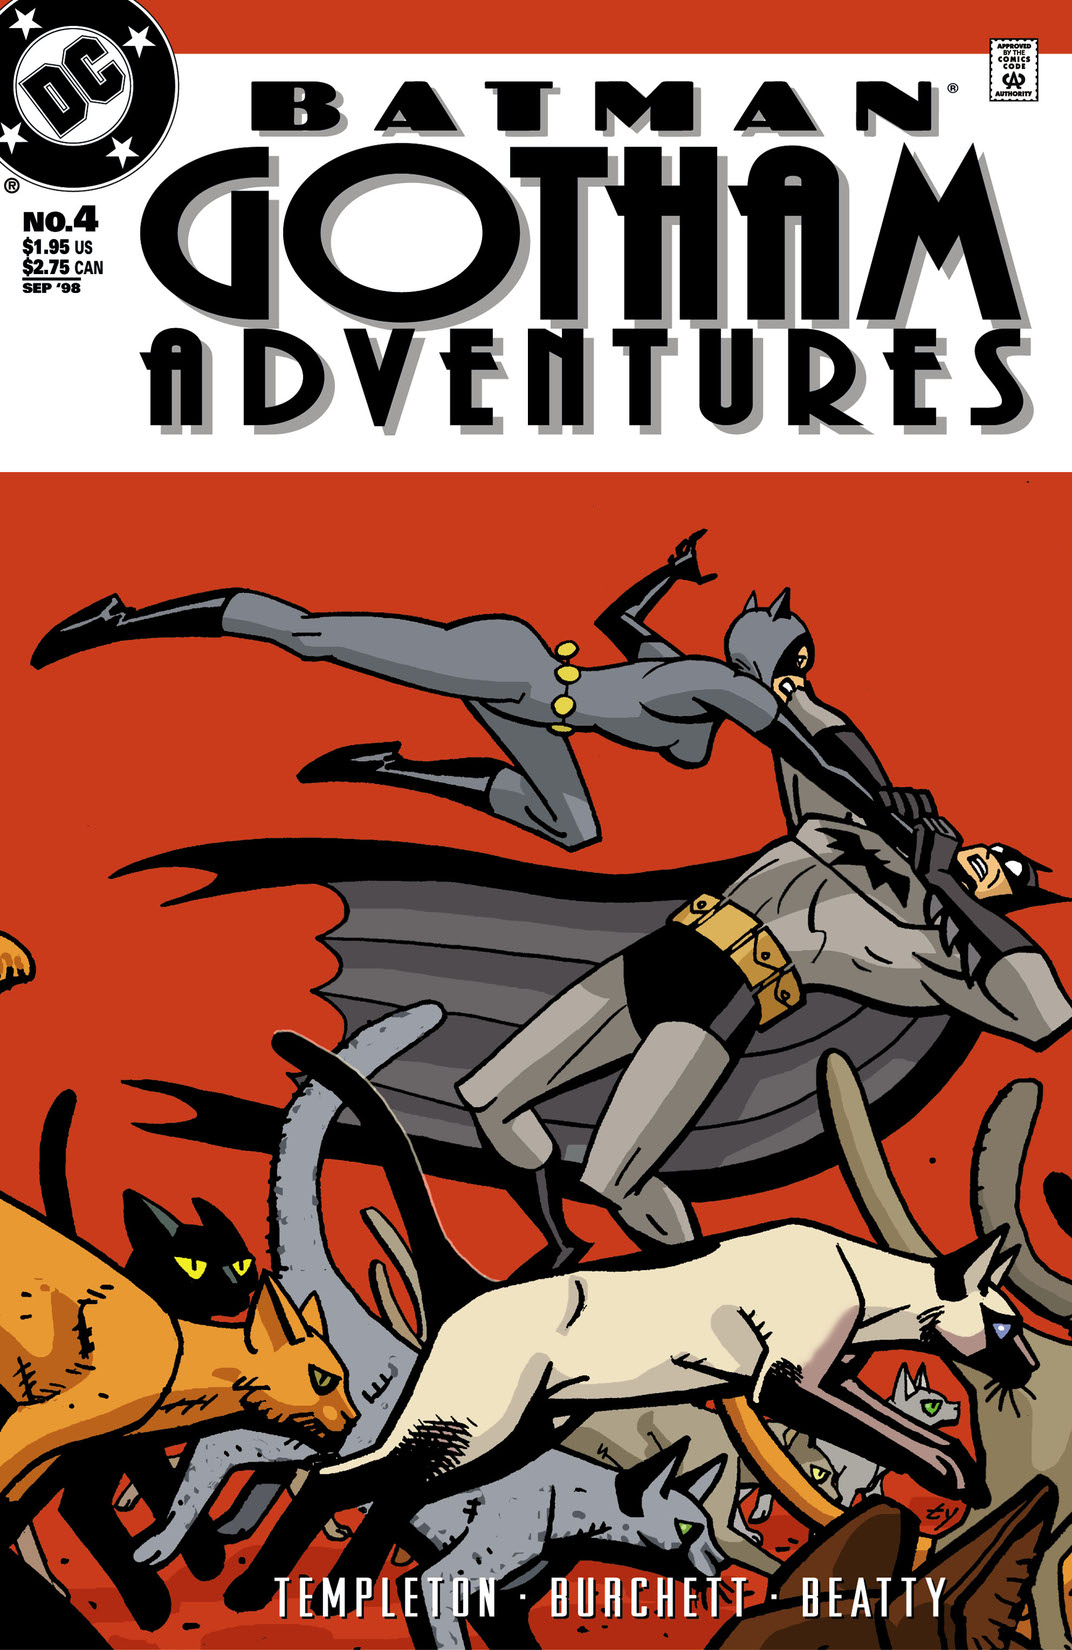 Batman: Gotham Adventures #4 preview images